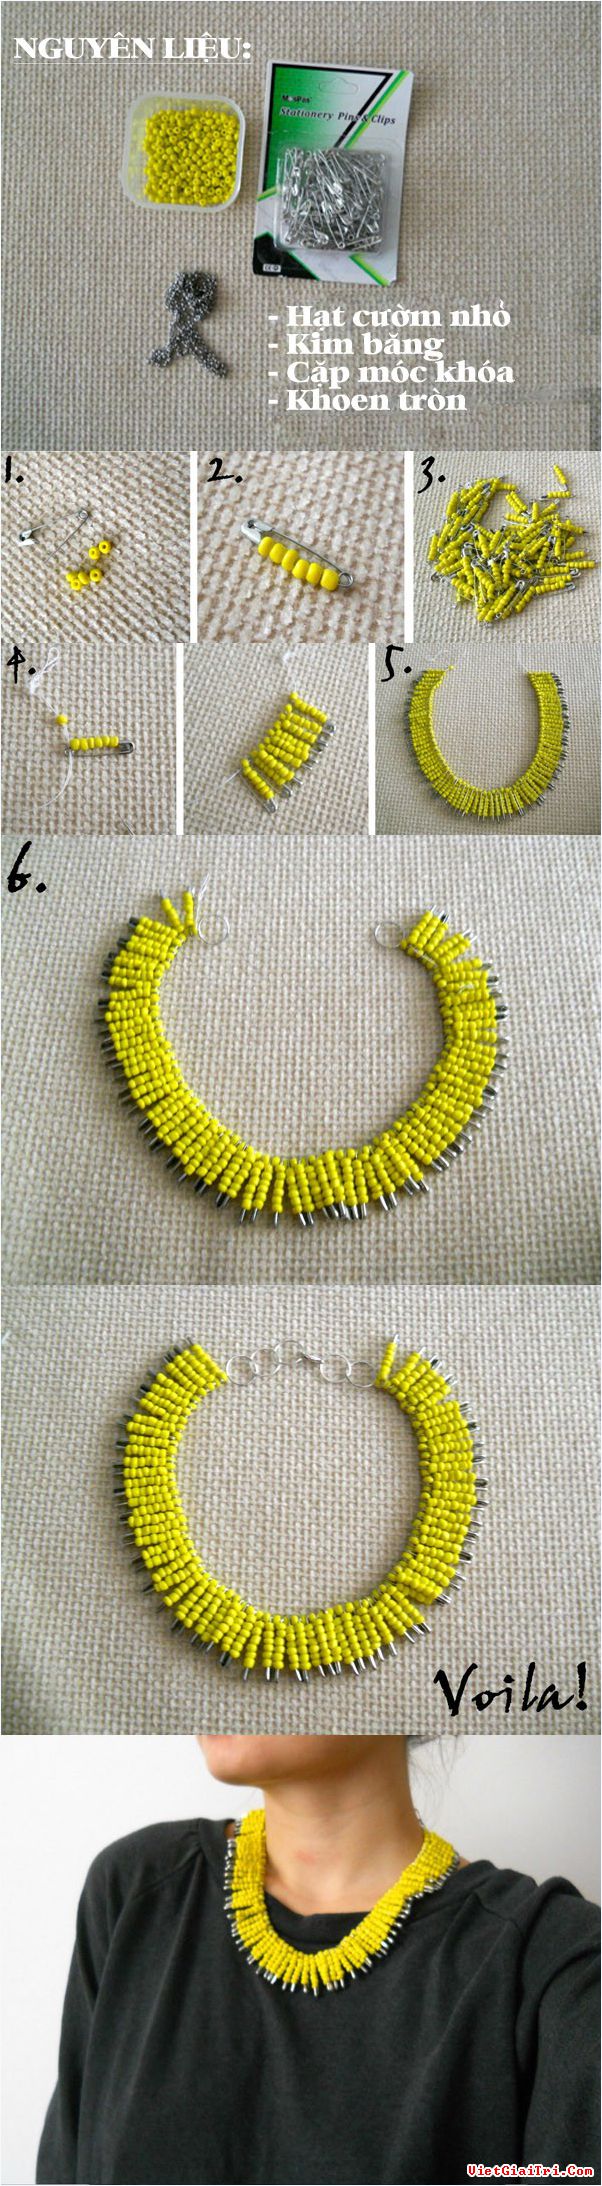 DIY Yellow Necklace Tutorial